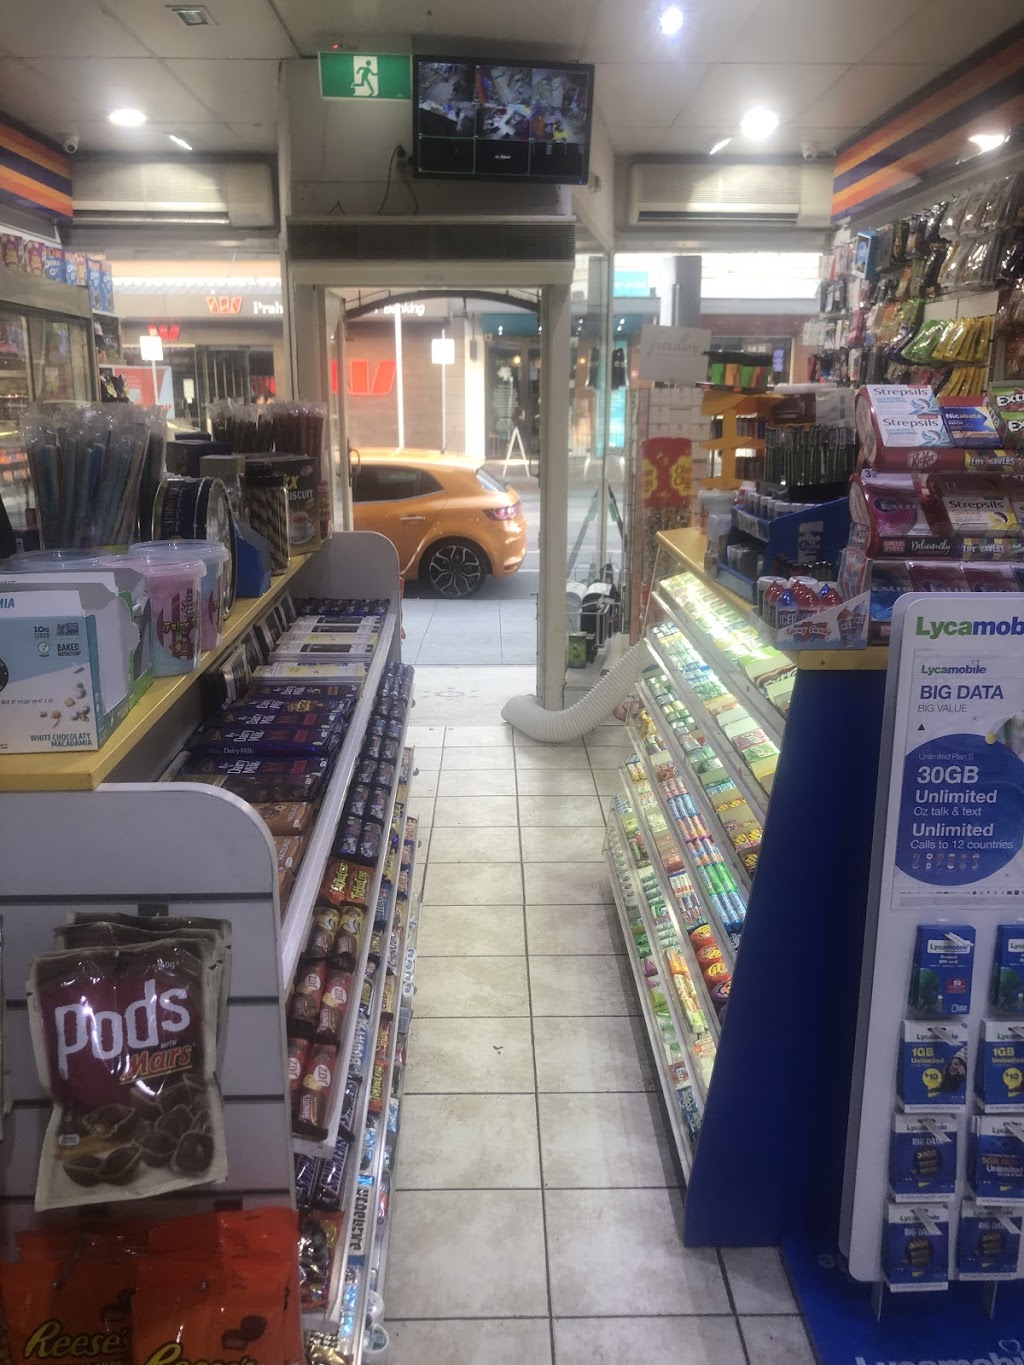 EzyMart | convenience store | 382 Chapel St, South Yarra VIC 3141, Australia